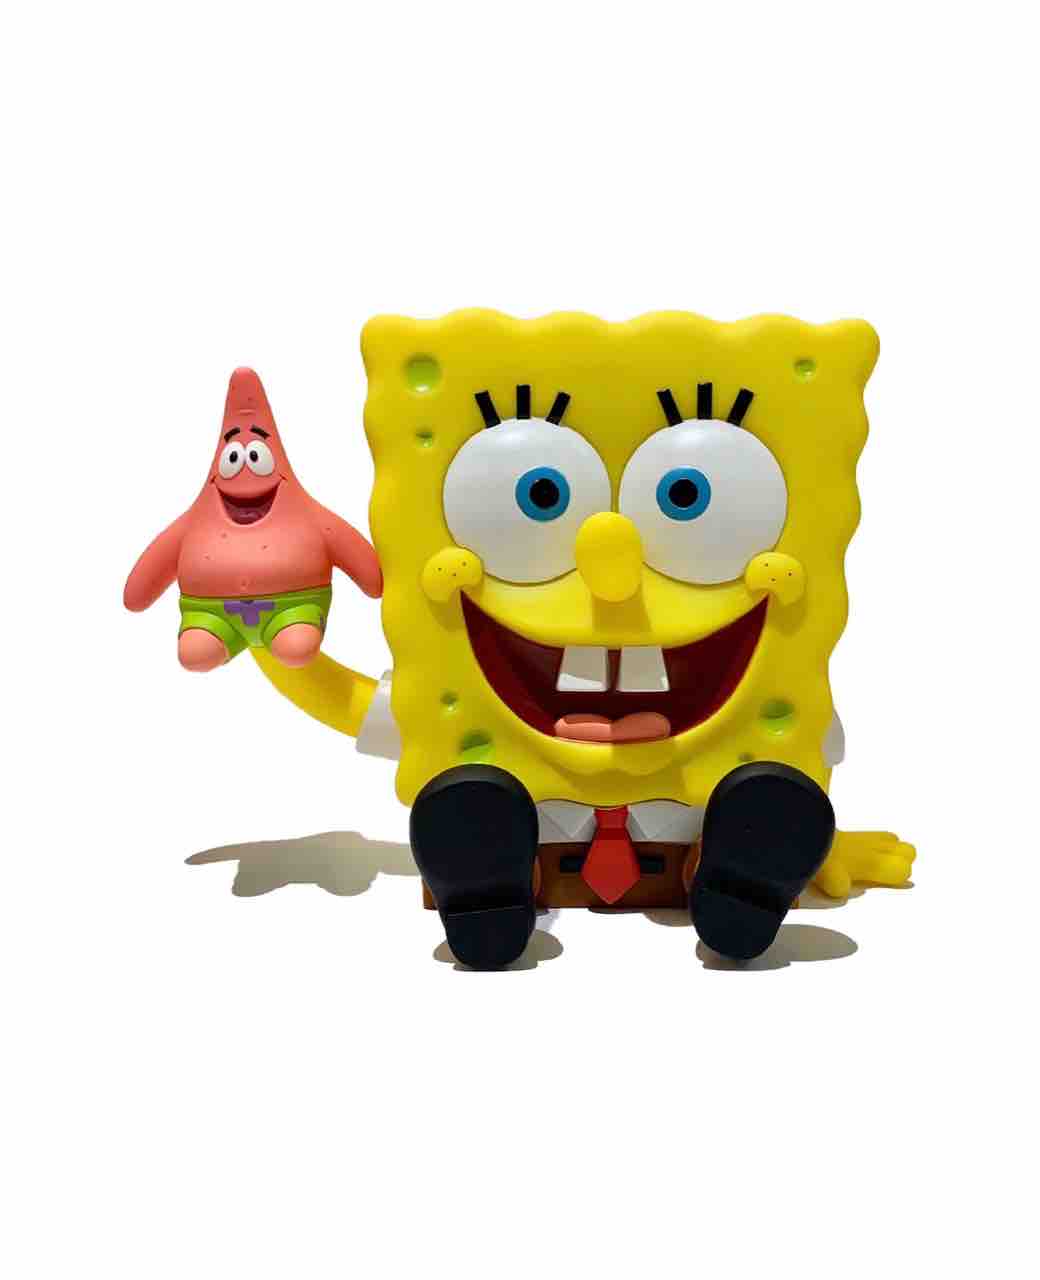 1ft Spongebob Full Color Ver Secretbase Toy